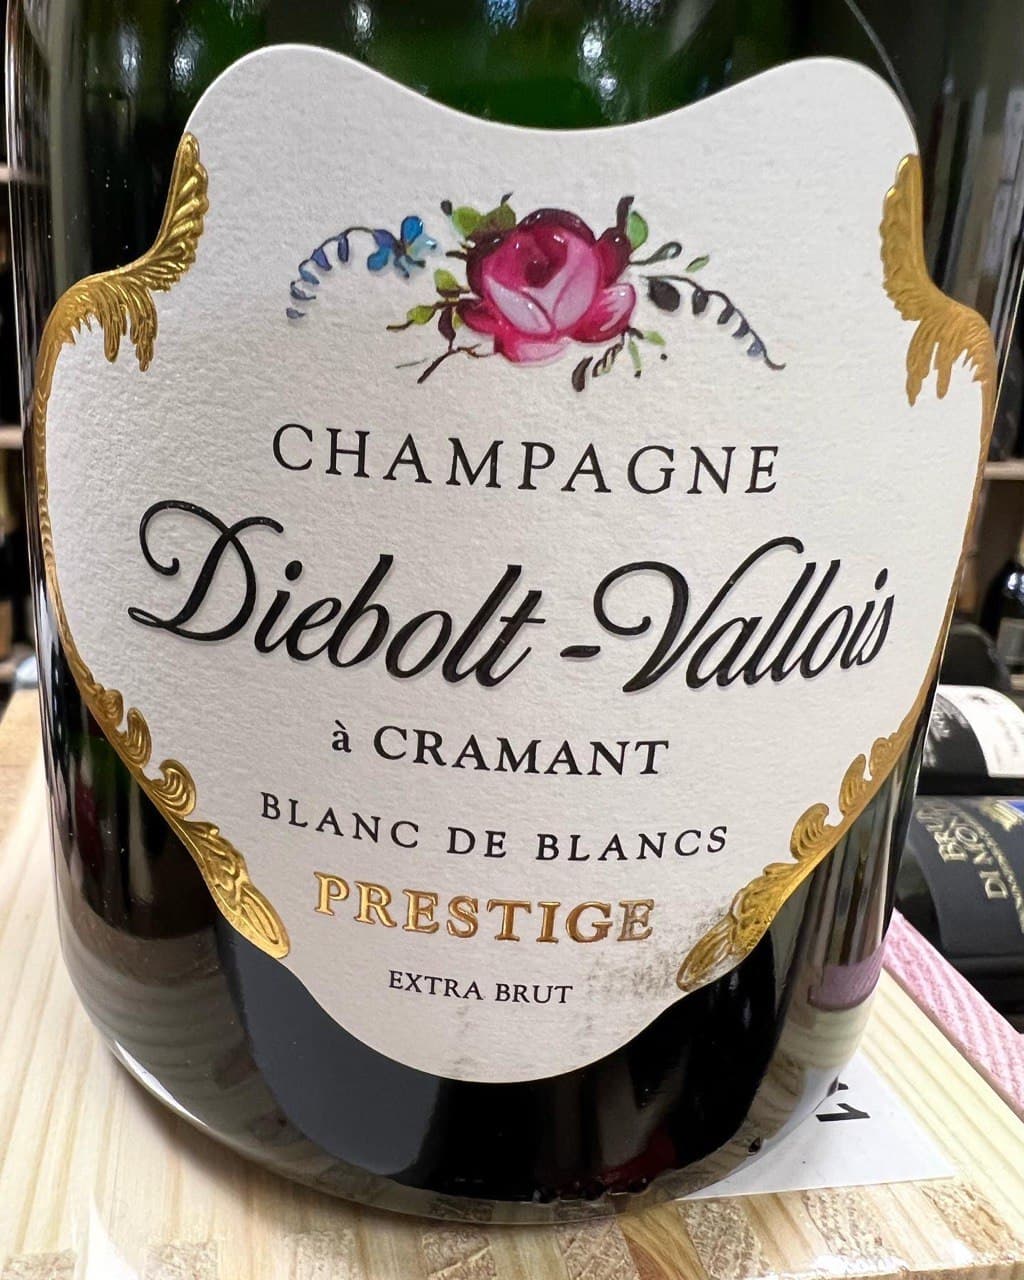 Champagne Diebolt-Vallois - Brut Blanc de Blancs 